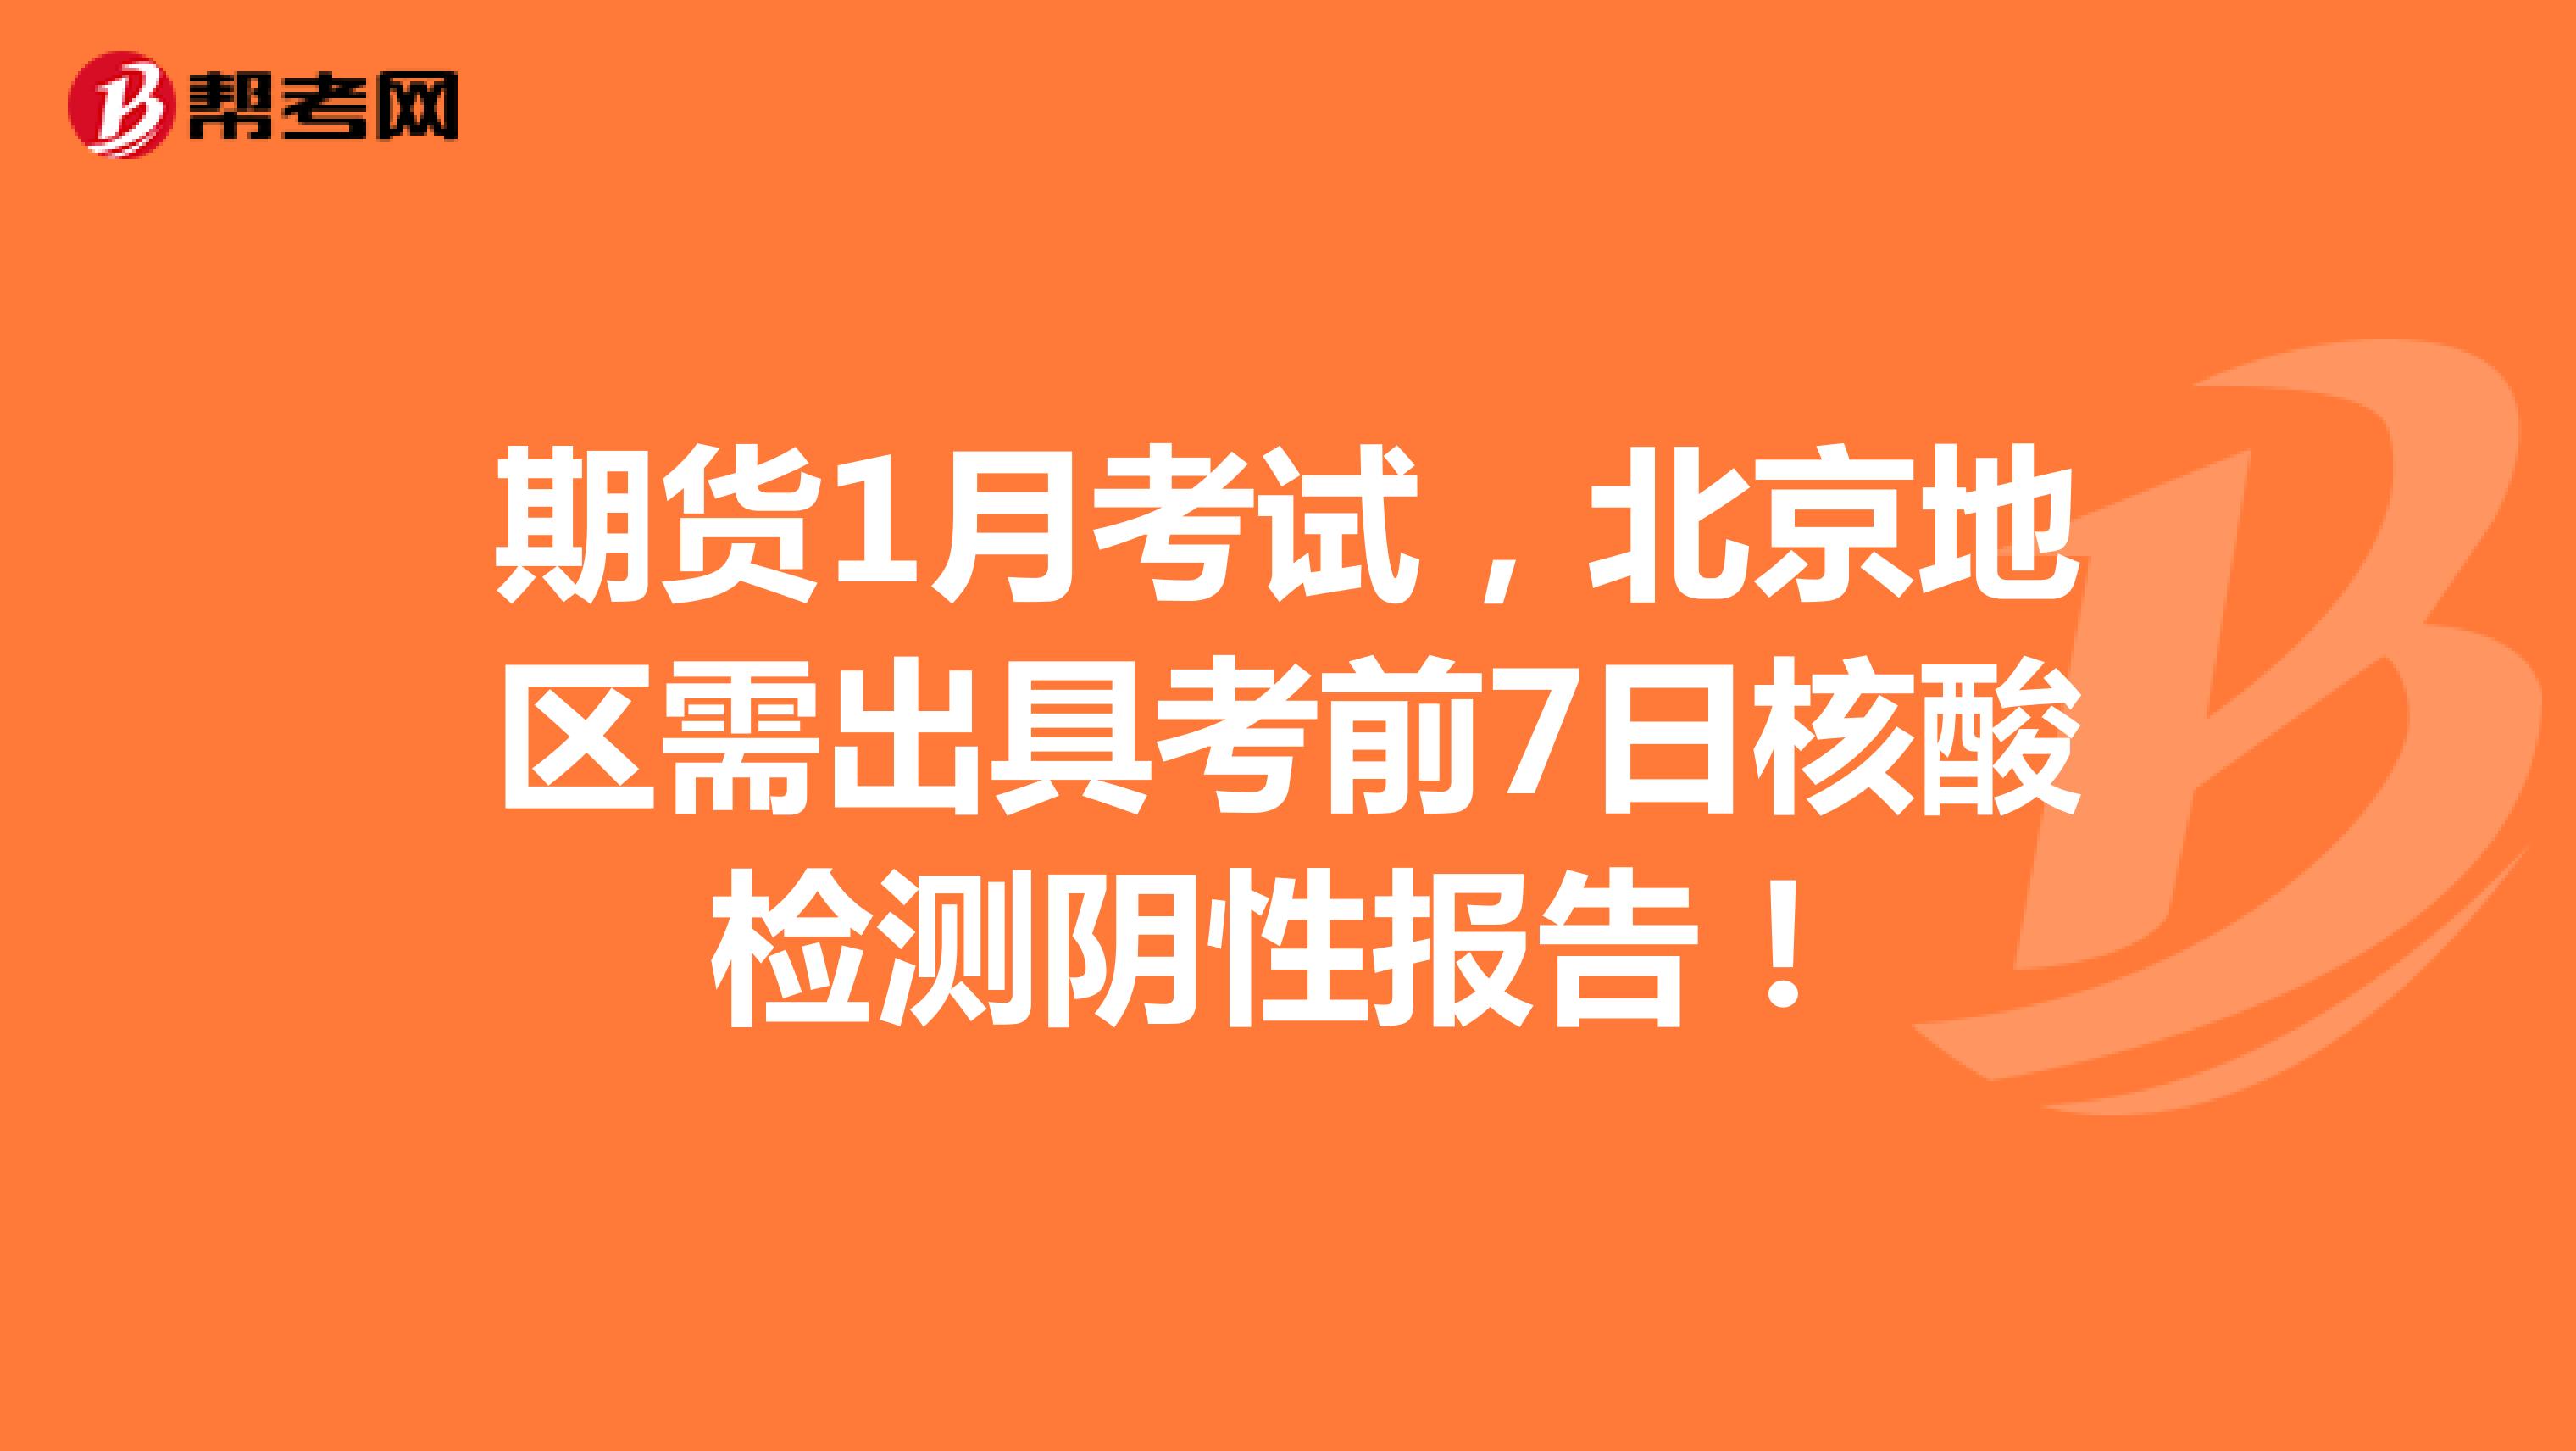 期货1月考试，北京地区需出具考前7日核酸检测阴性报告！